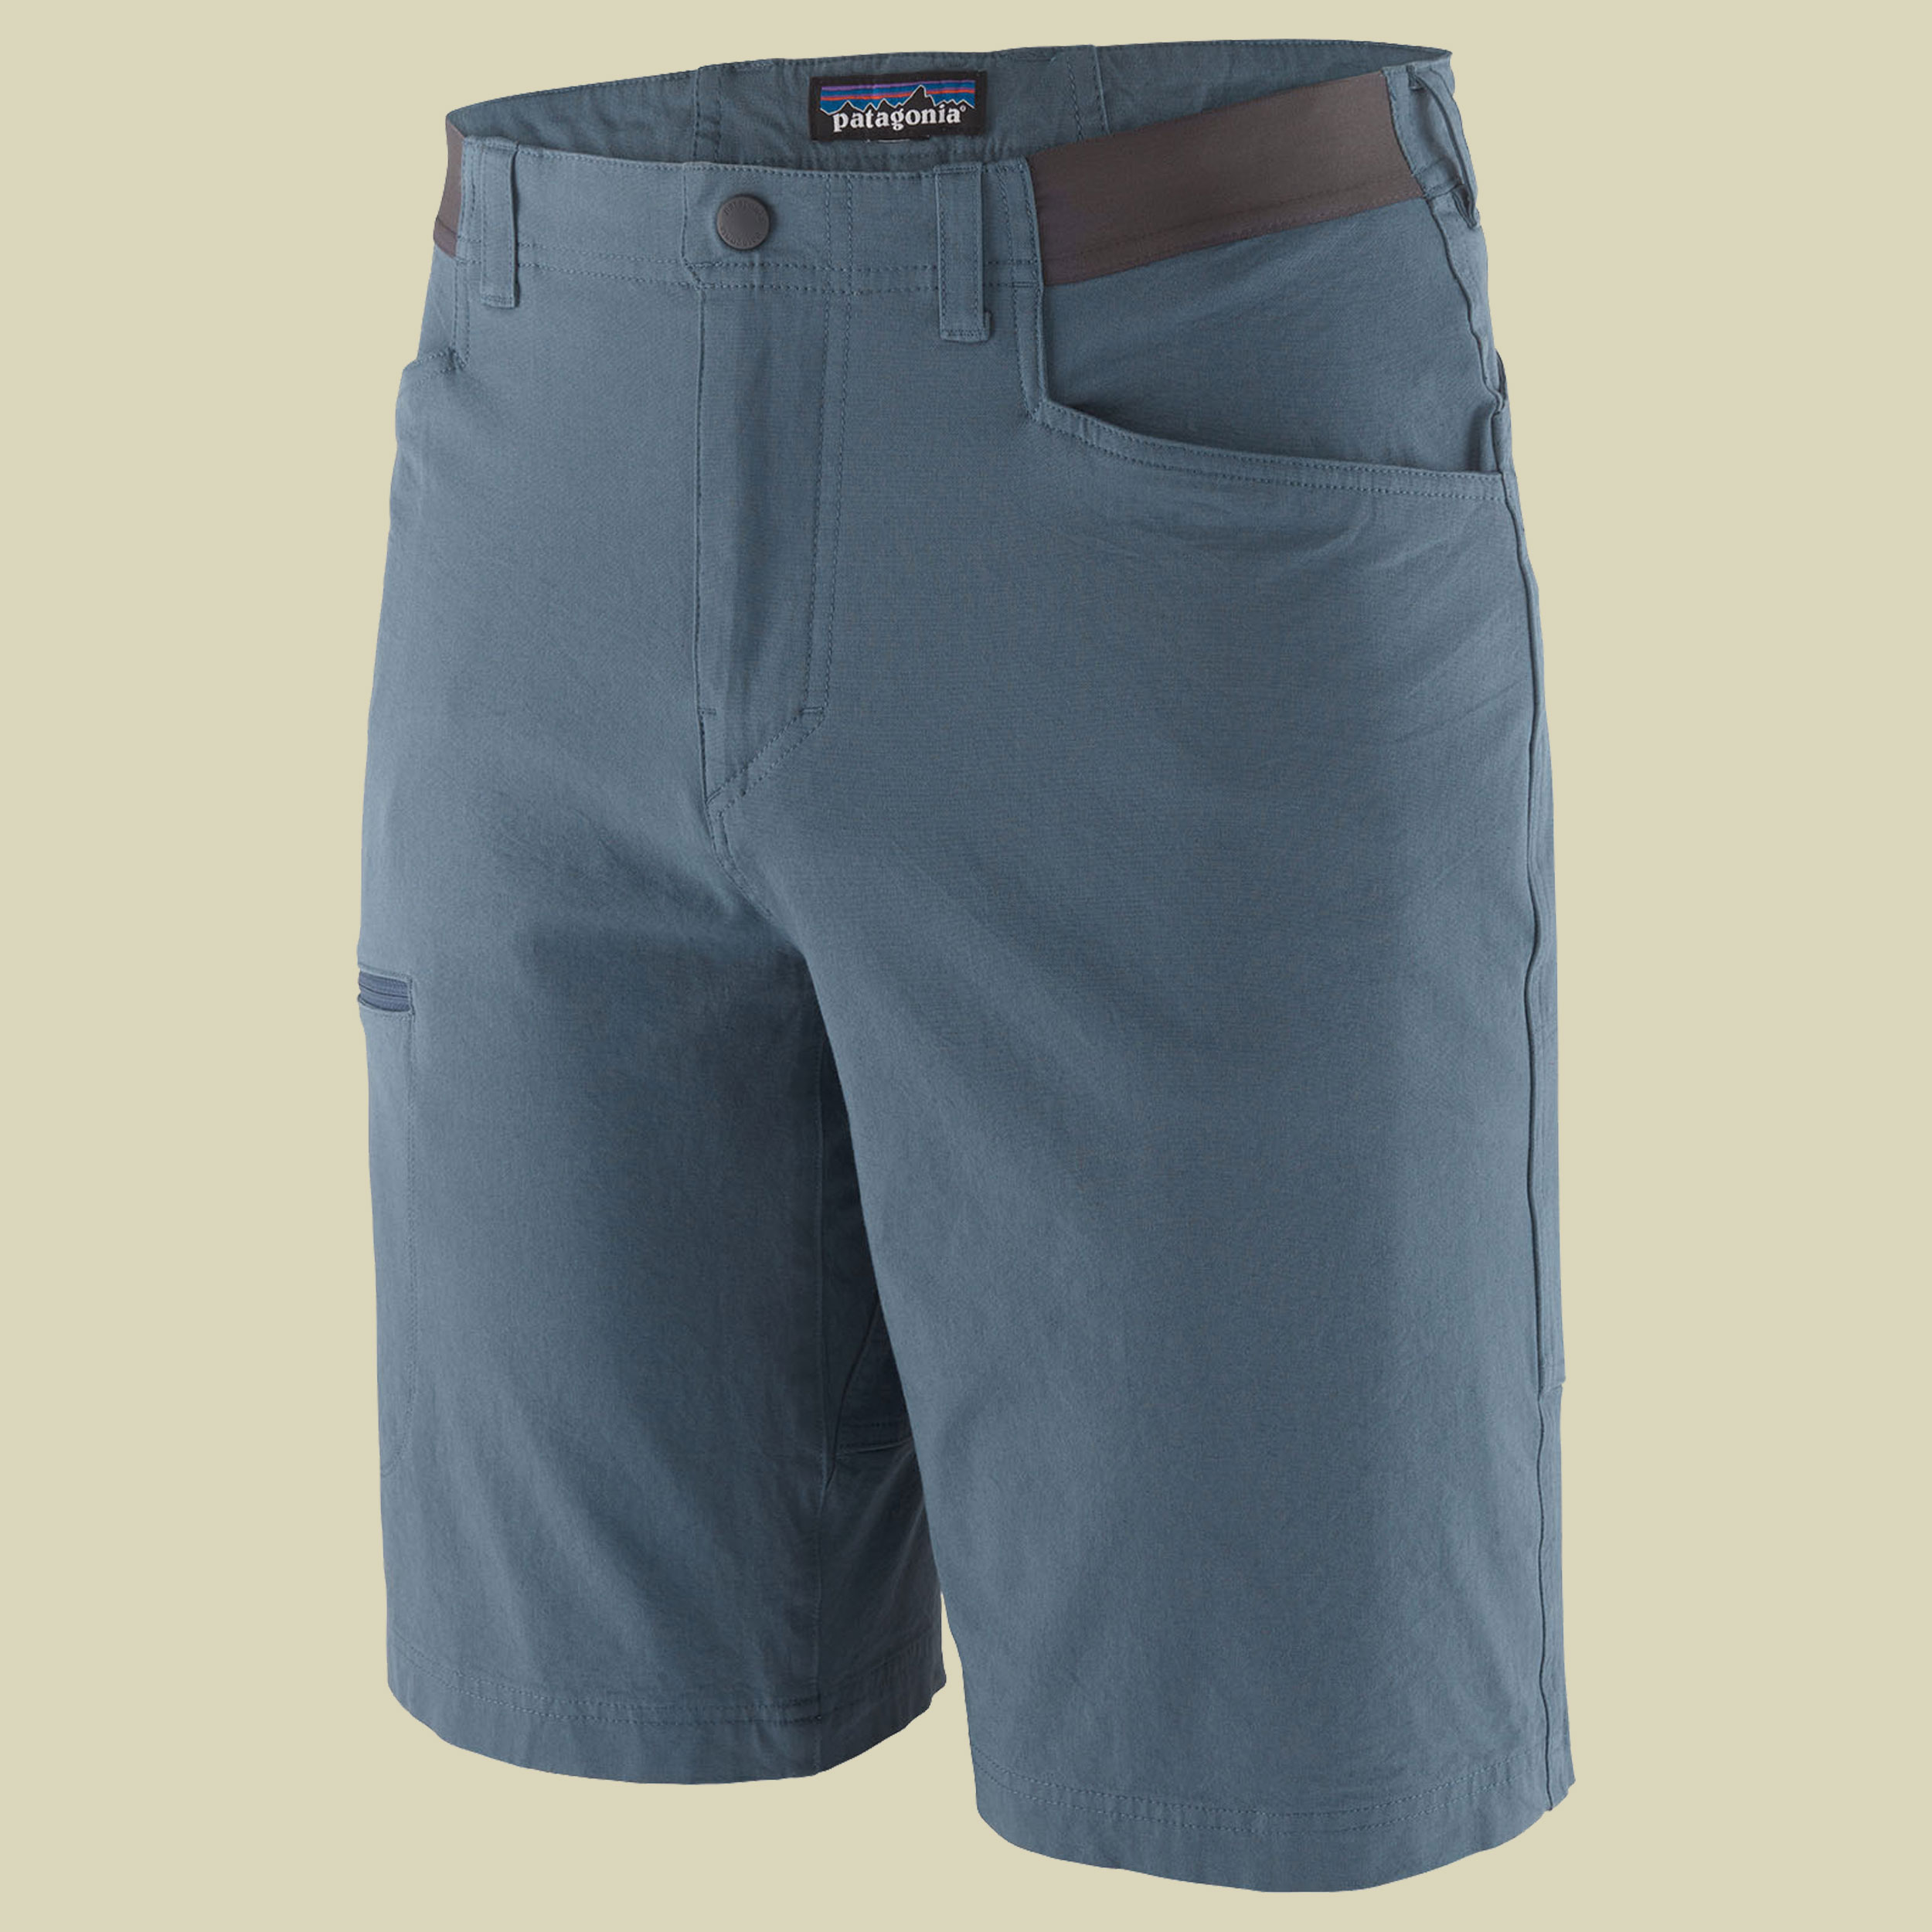 Venga Rock Shorts Men blau 36 - utility blue